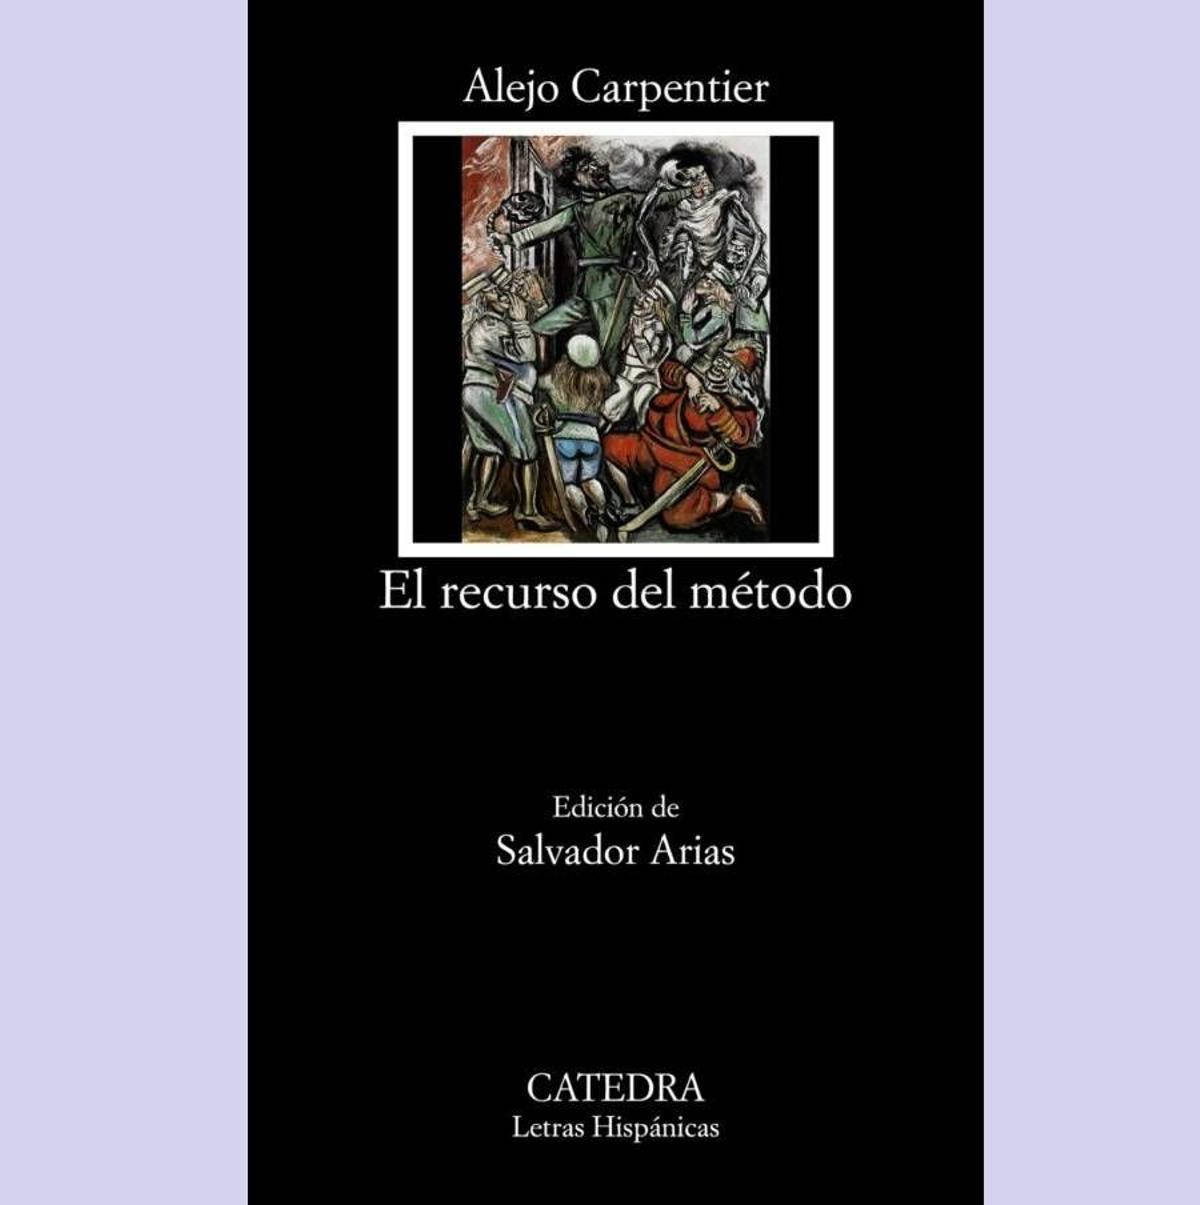 El libro 'El recurso del método' de Alejo Carpentier